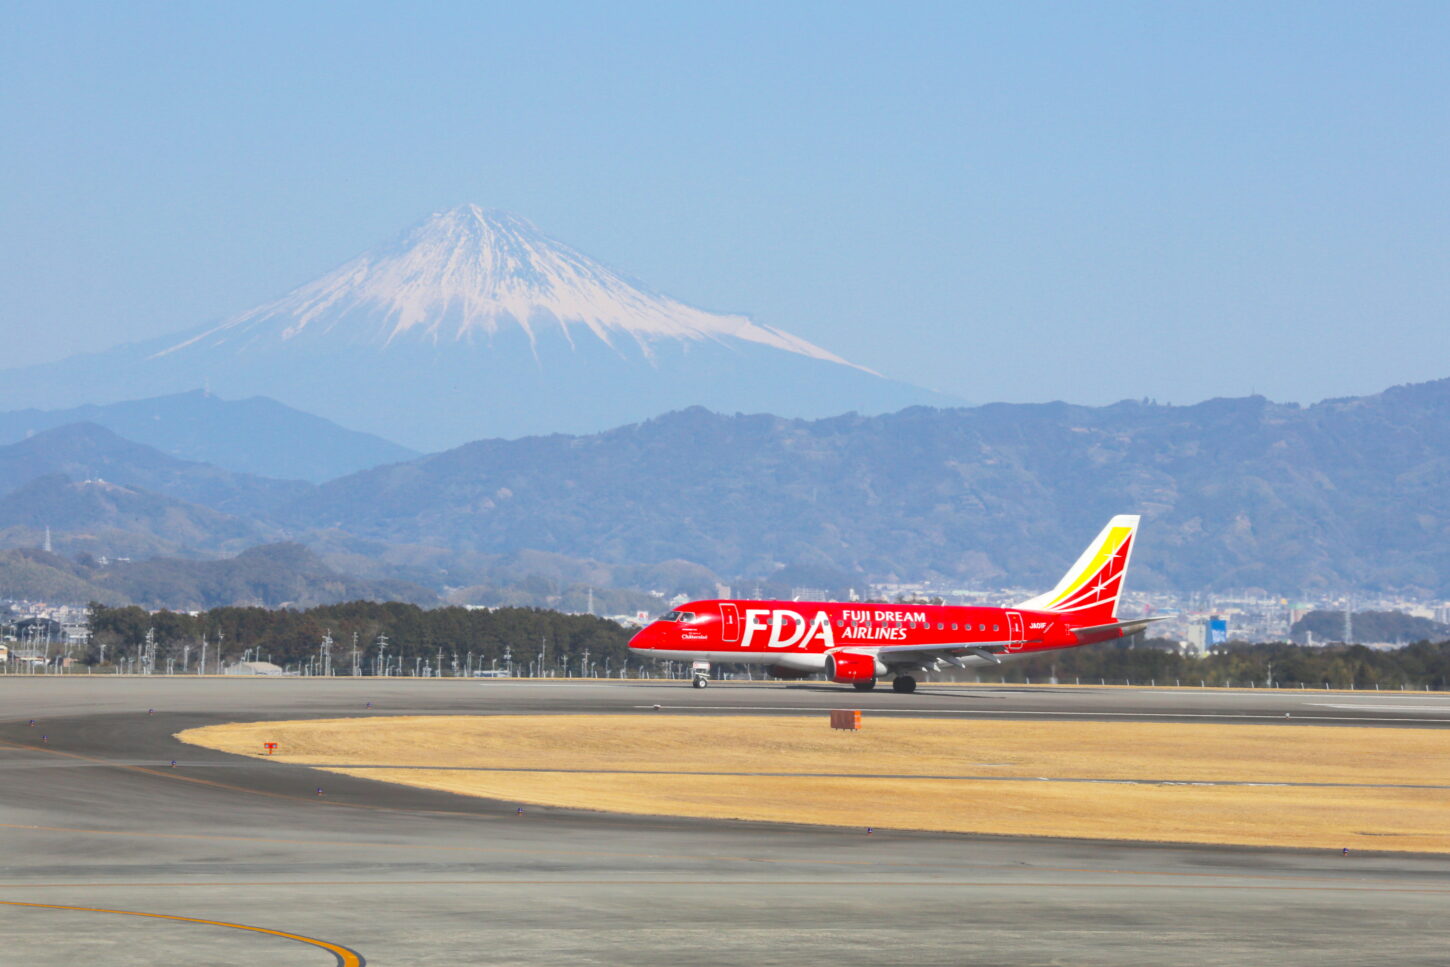 遊びに行きたくなる 富士山静岡空港 の楽しみ方 静岡県観光公式ブログ